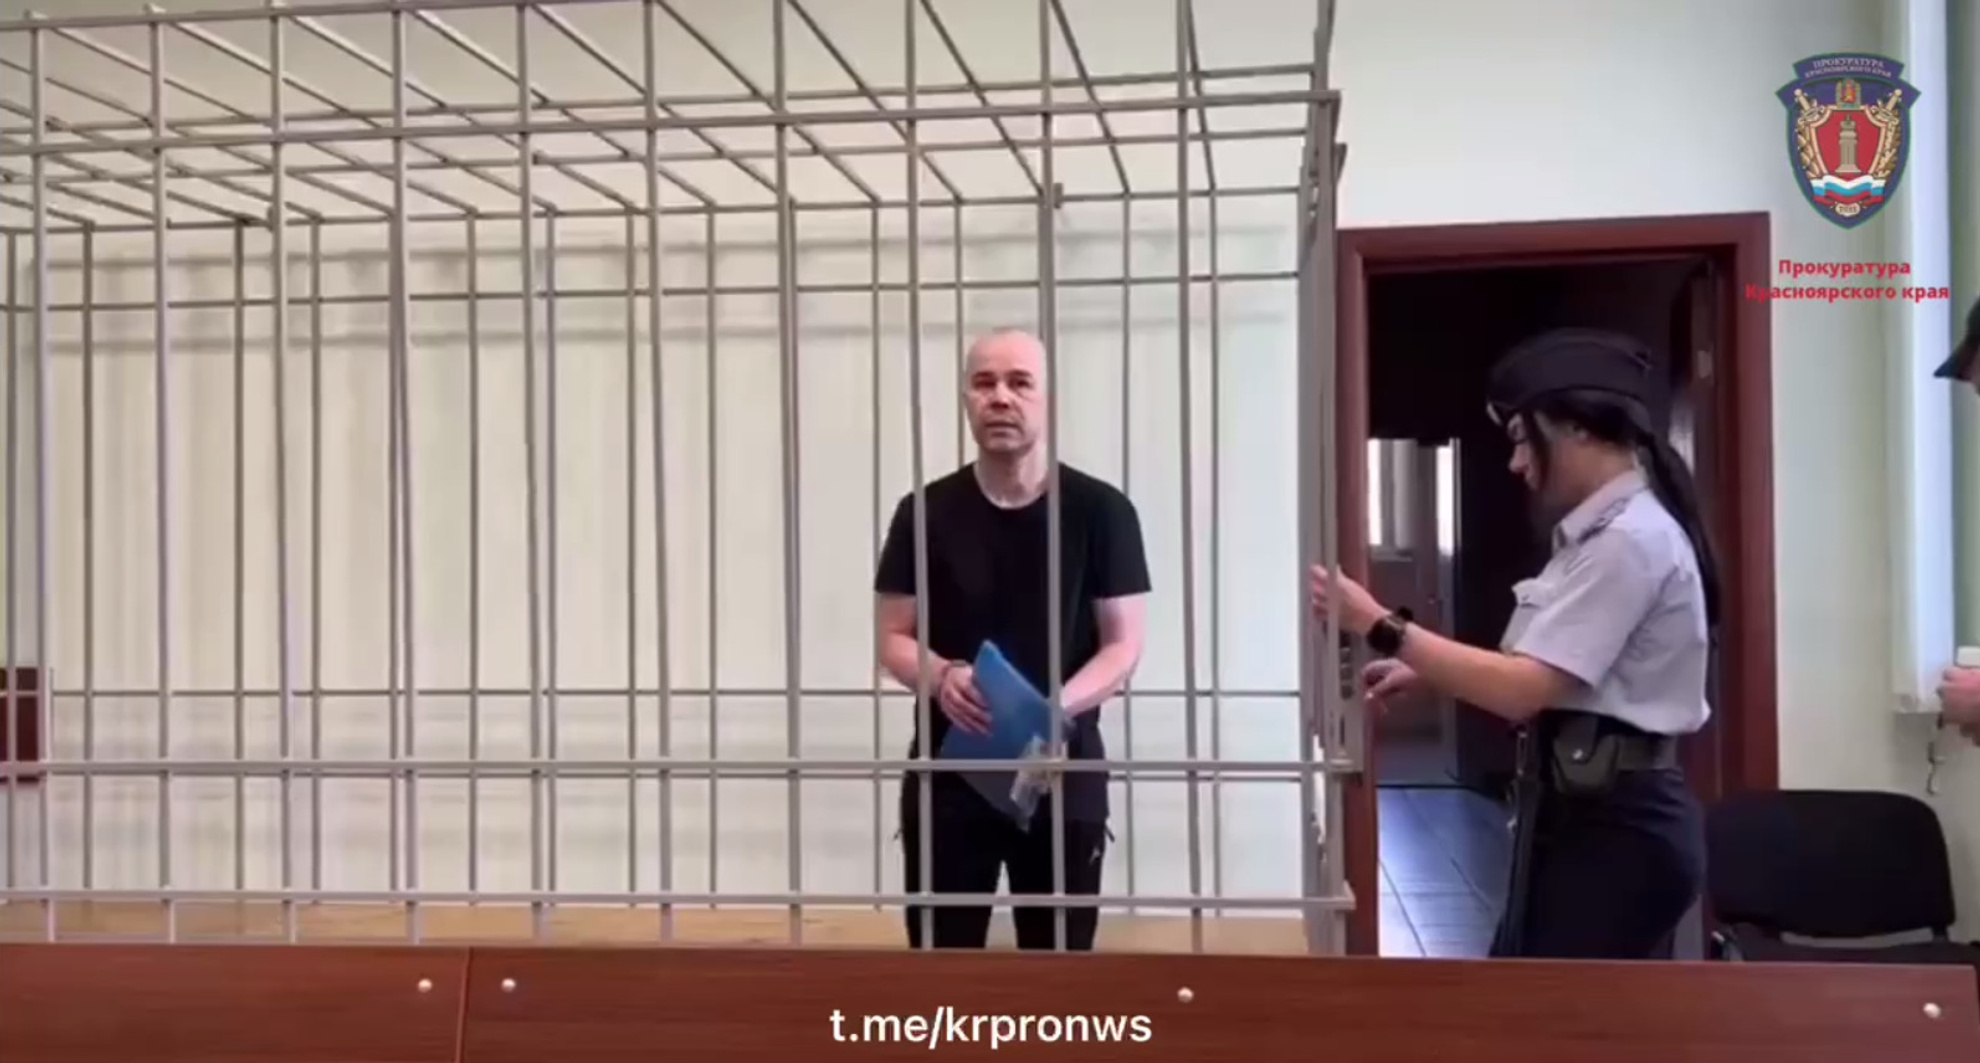 Скандальный экс-полицейский Привалихин попросил сохранить пенсию. Ему грозит 18 лет строгого режима